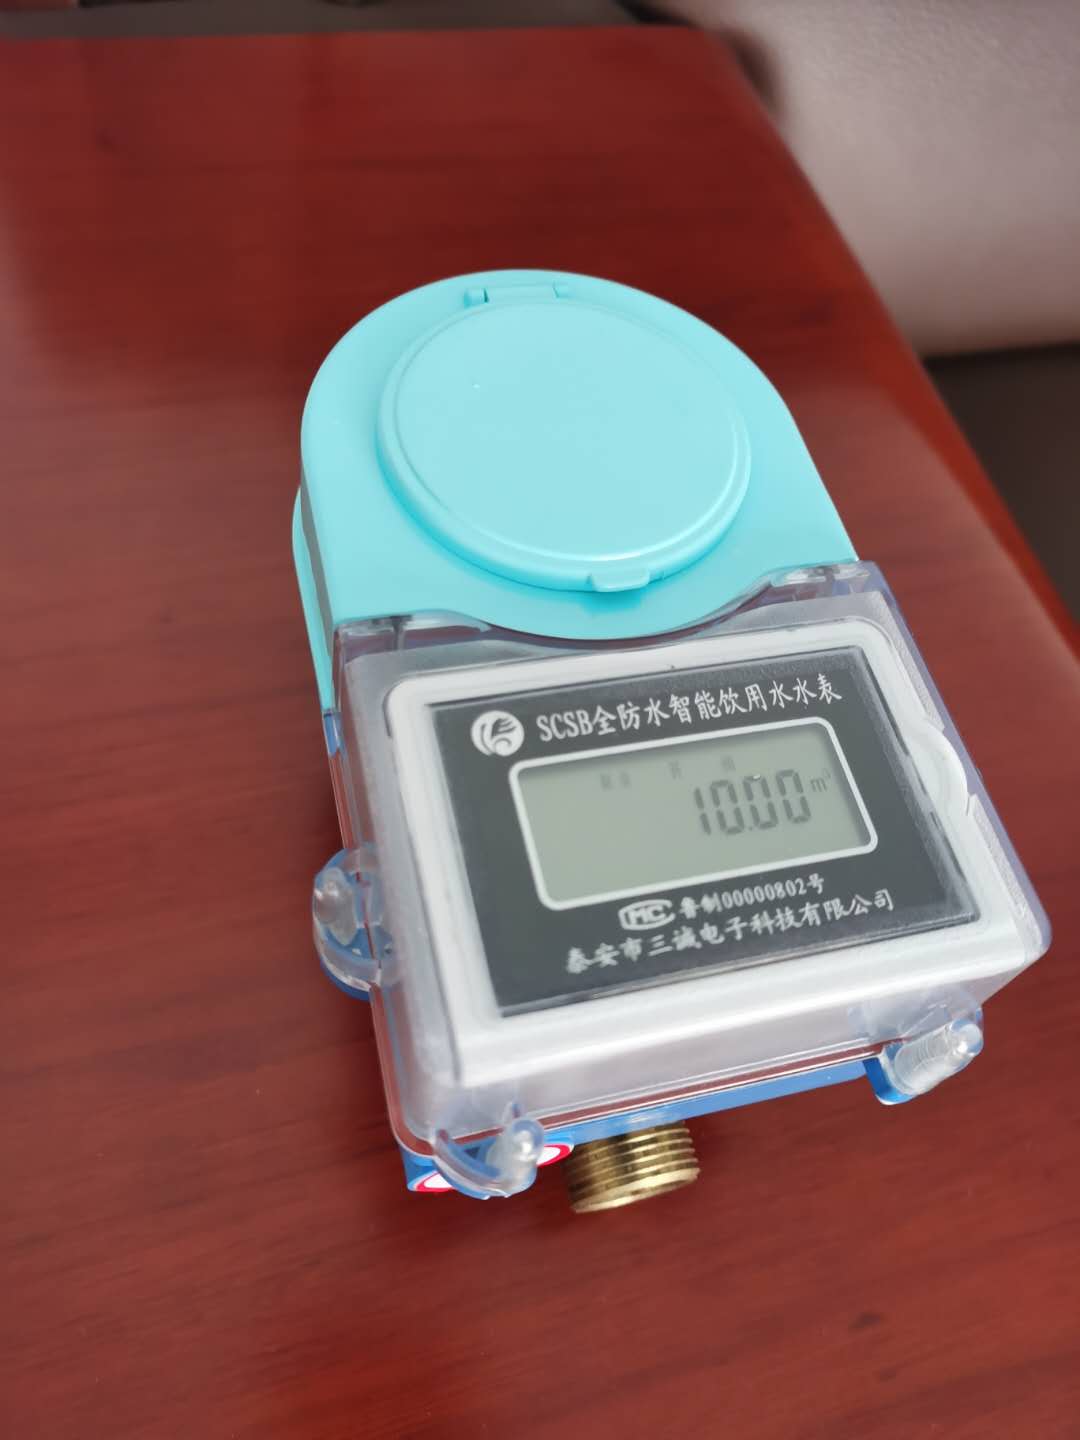 重慶山西萬榮縣水利局安裝我公司藍牙水表